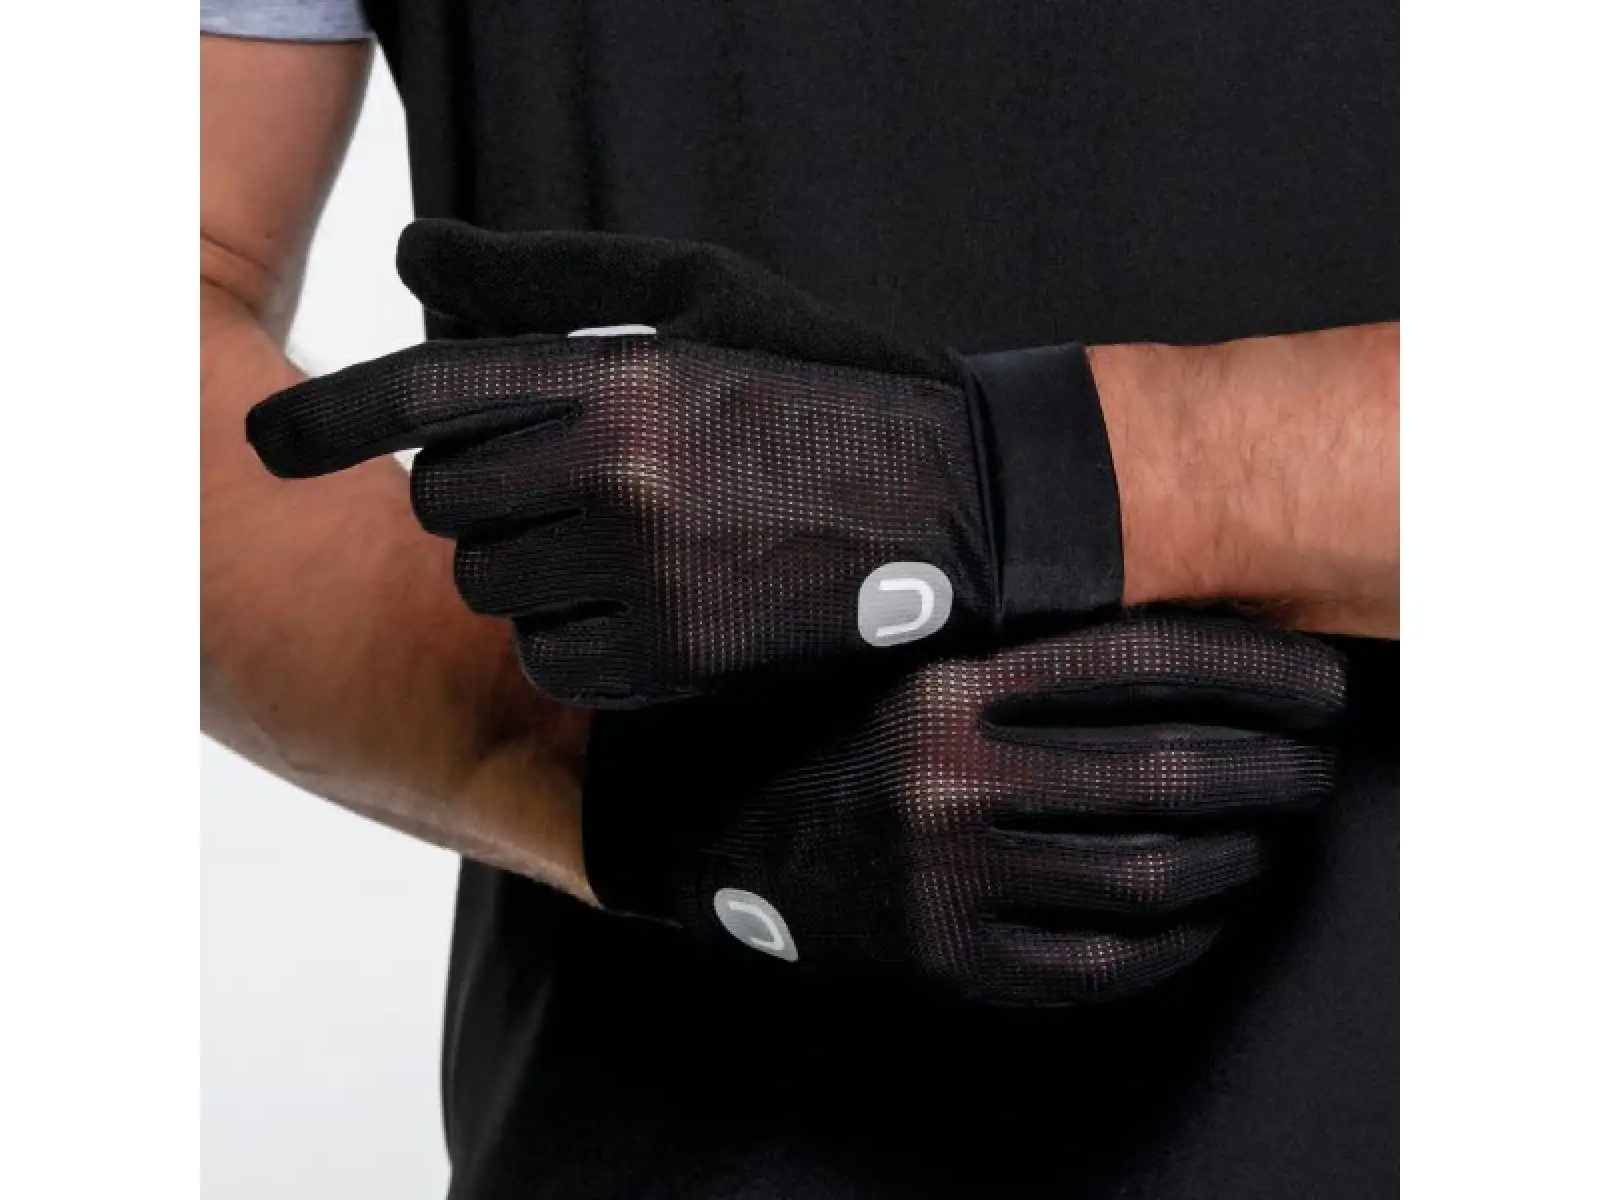 Dotout Cascade pánské rukavice černá